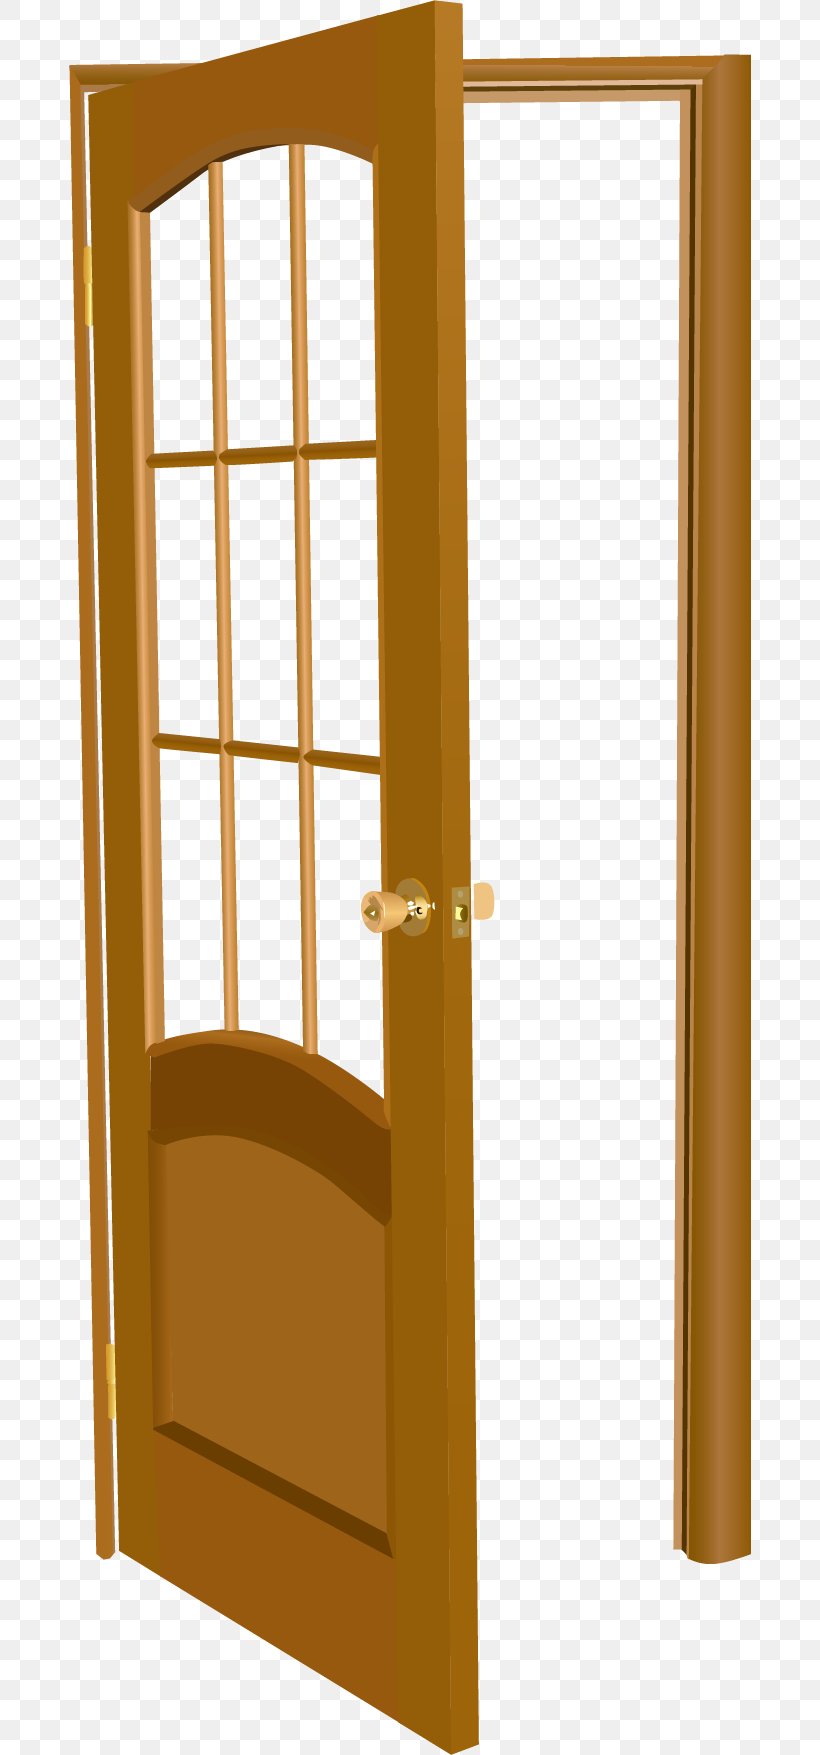 Table Door Window Illustration, PNG, 682x1755px, Table, Building, Deck, Door, Home Door Download Free